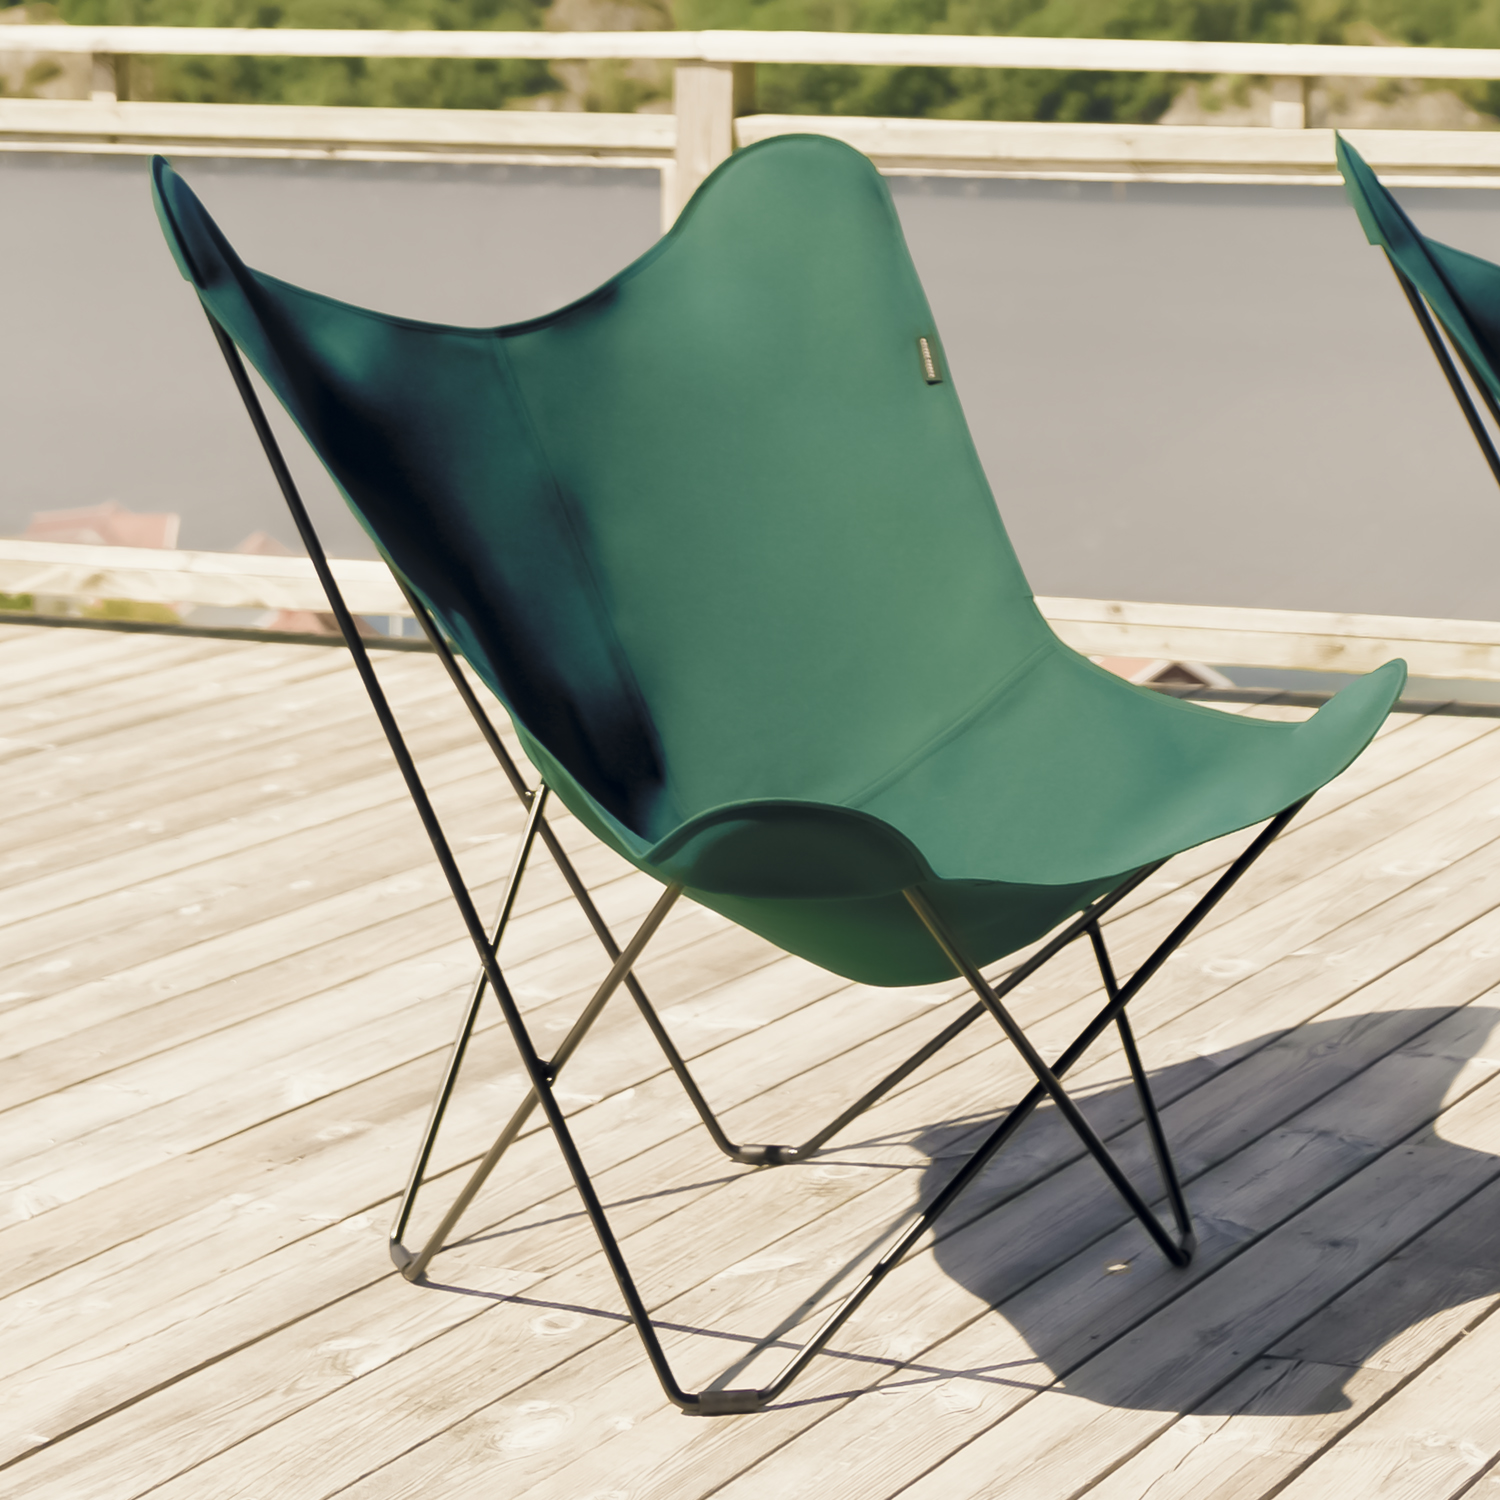 CUERODESIGN Outdoorsessel Sunshine Mariposa Forest Green mit schwarzem Stahlgestell und Sunbrella-Textil